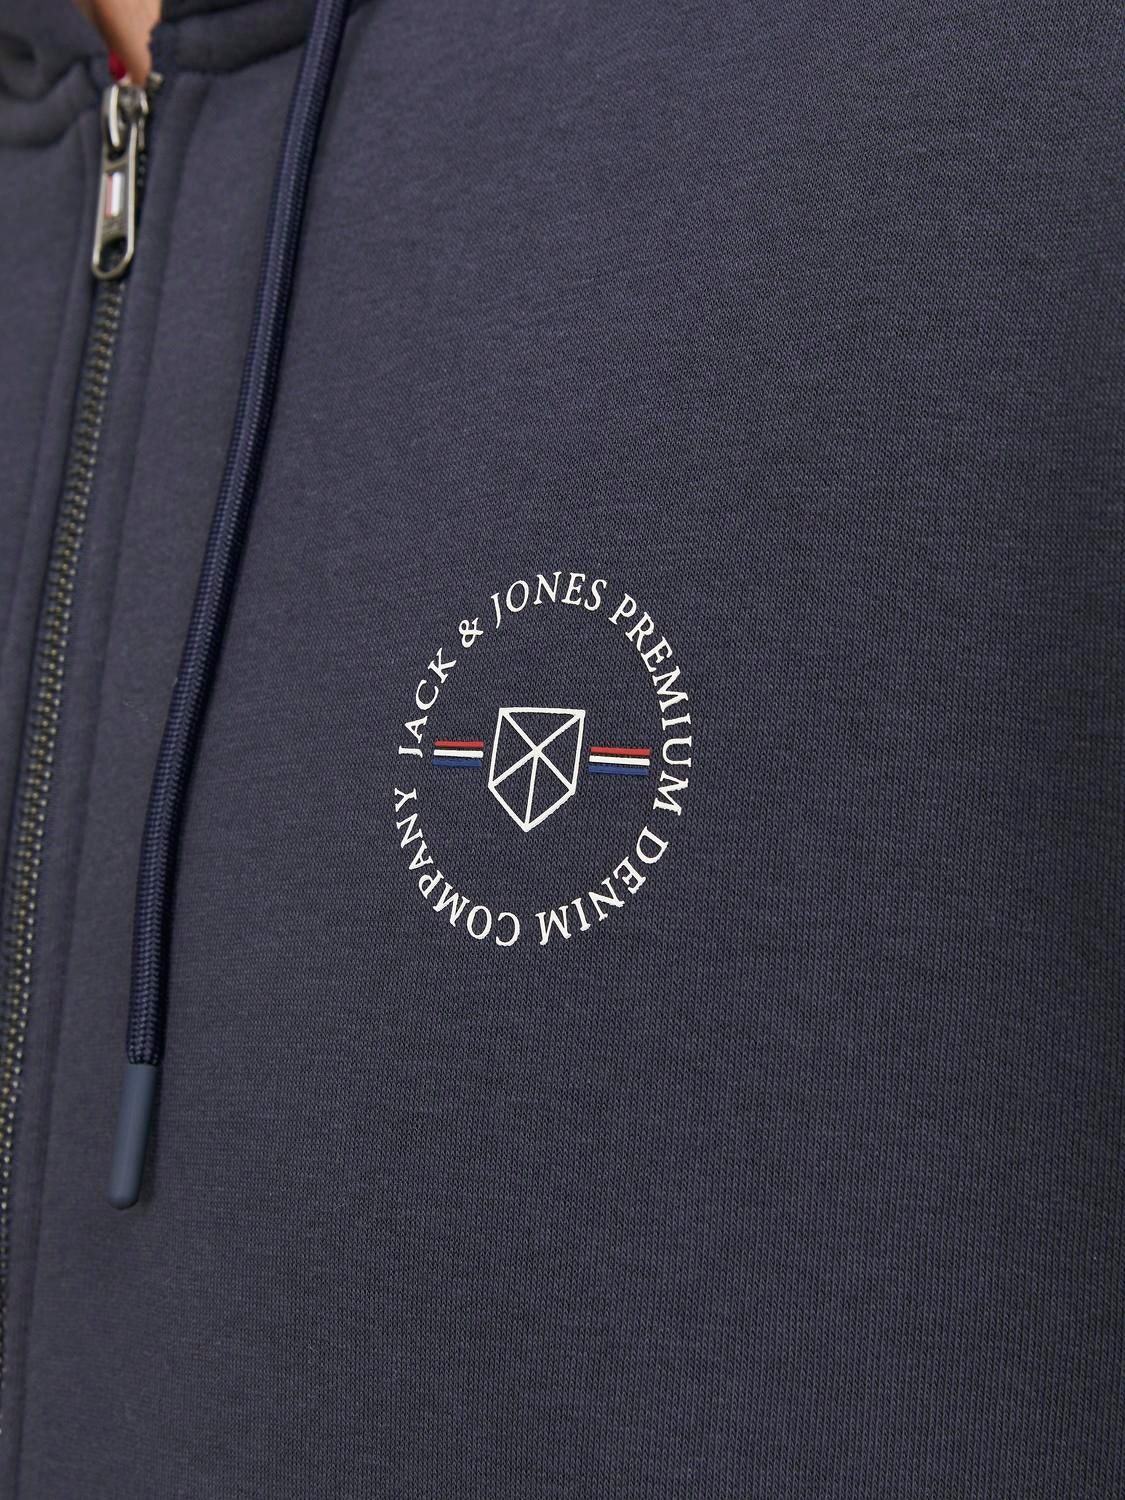 Jack & Jones Plus Size Gładki Bluza zapinana na zamek -Seaborne - 12248272